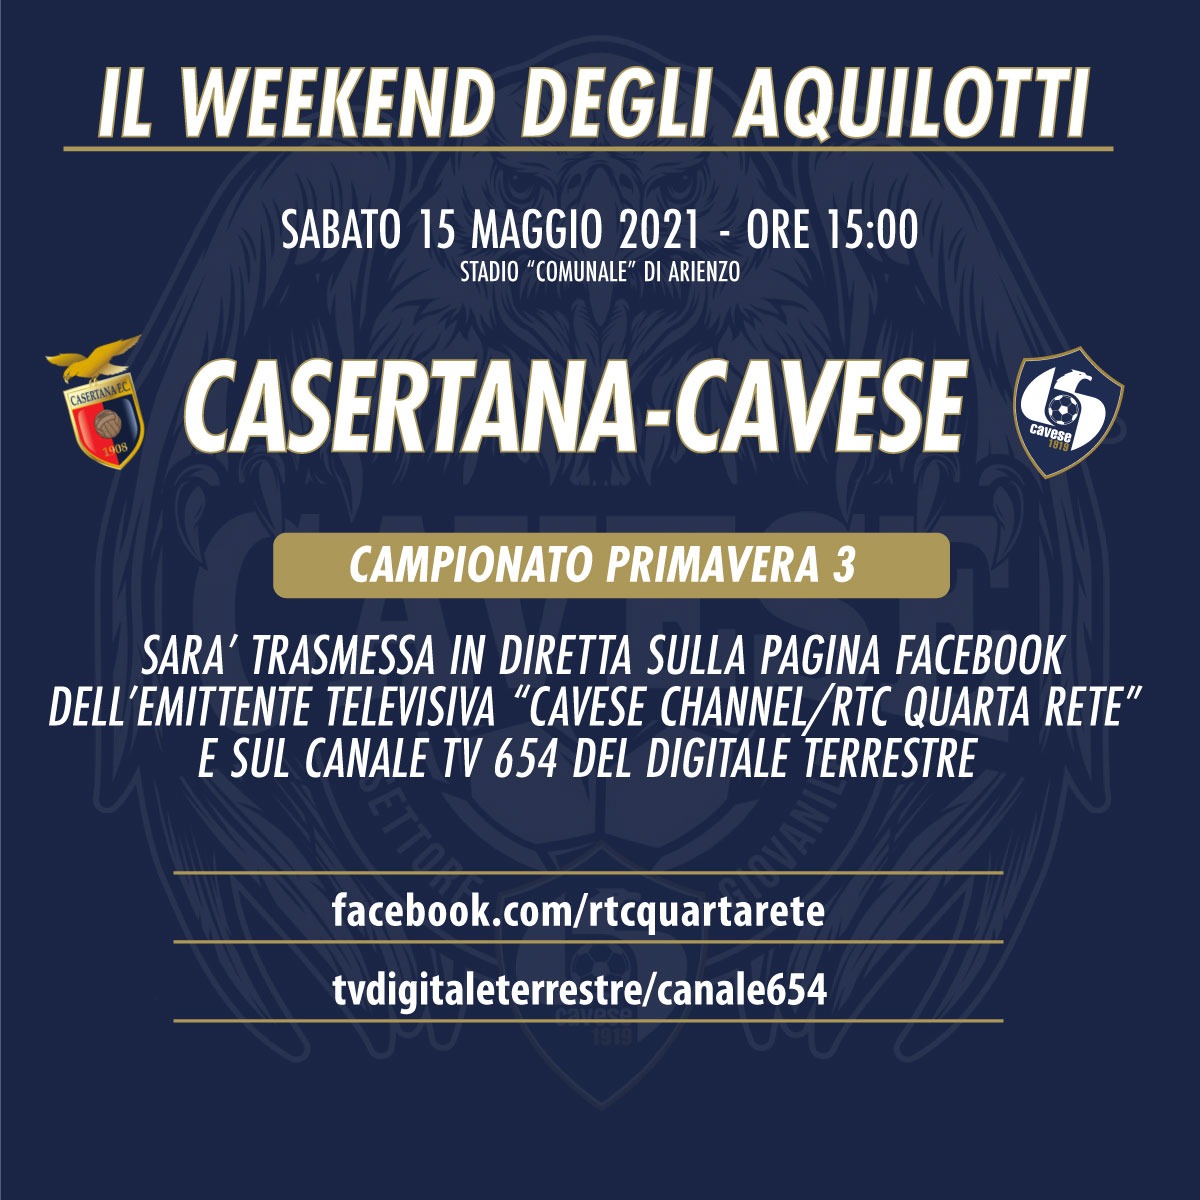 WEEKEND DEGLI AQUILOTTI, come seguire il match Casertana – Cavese